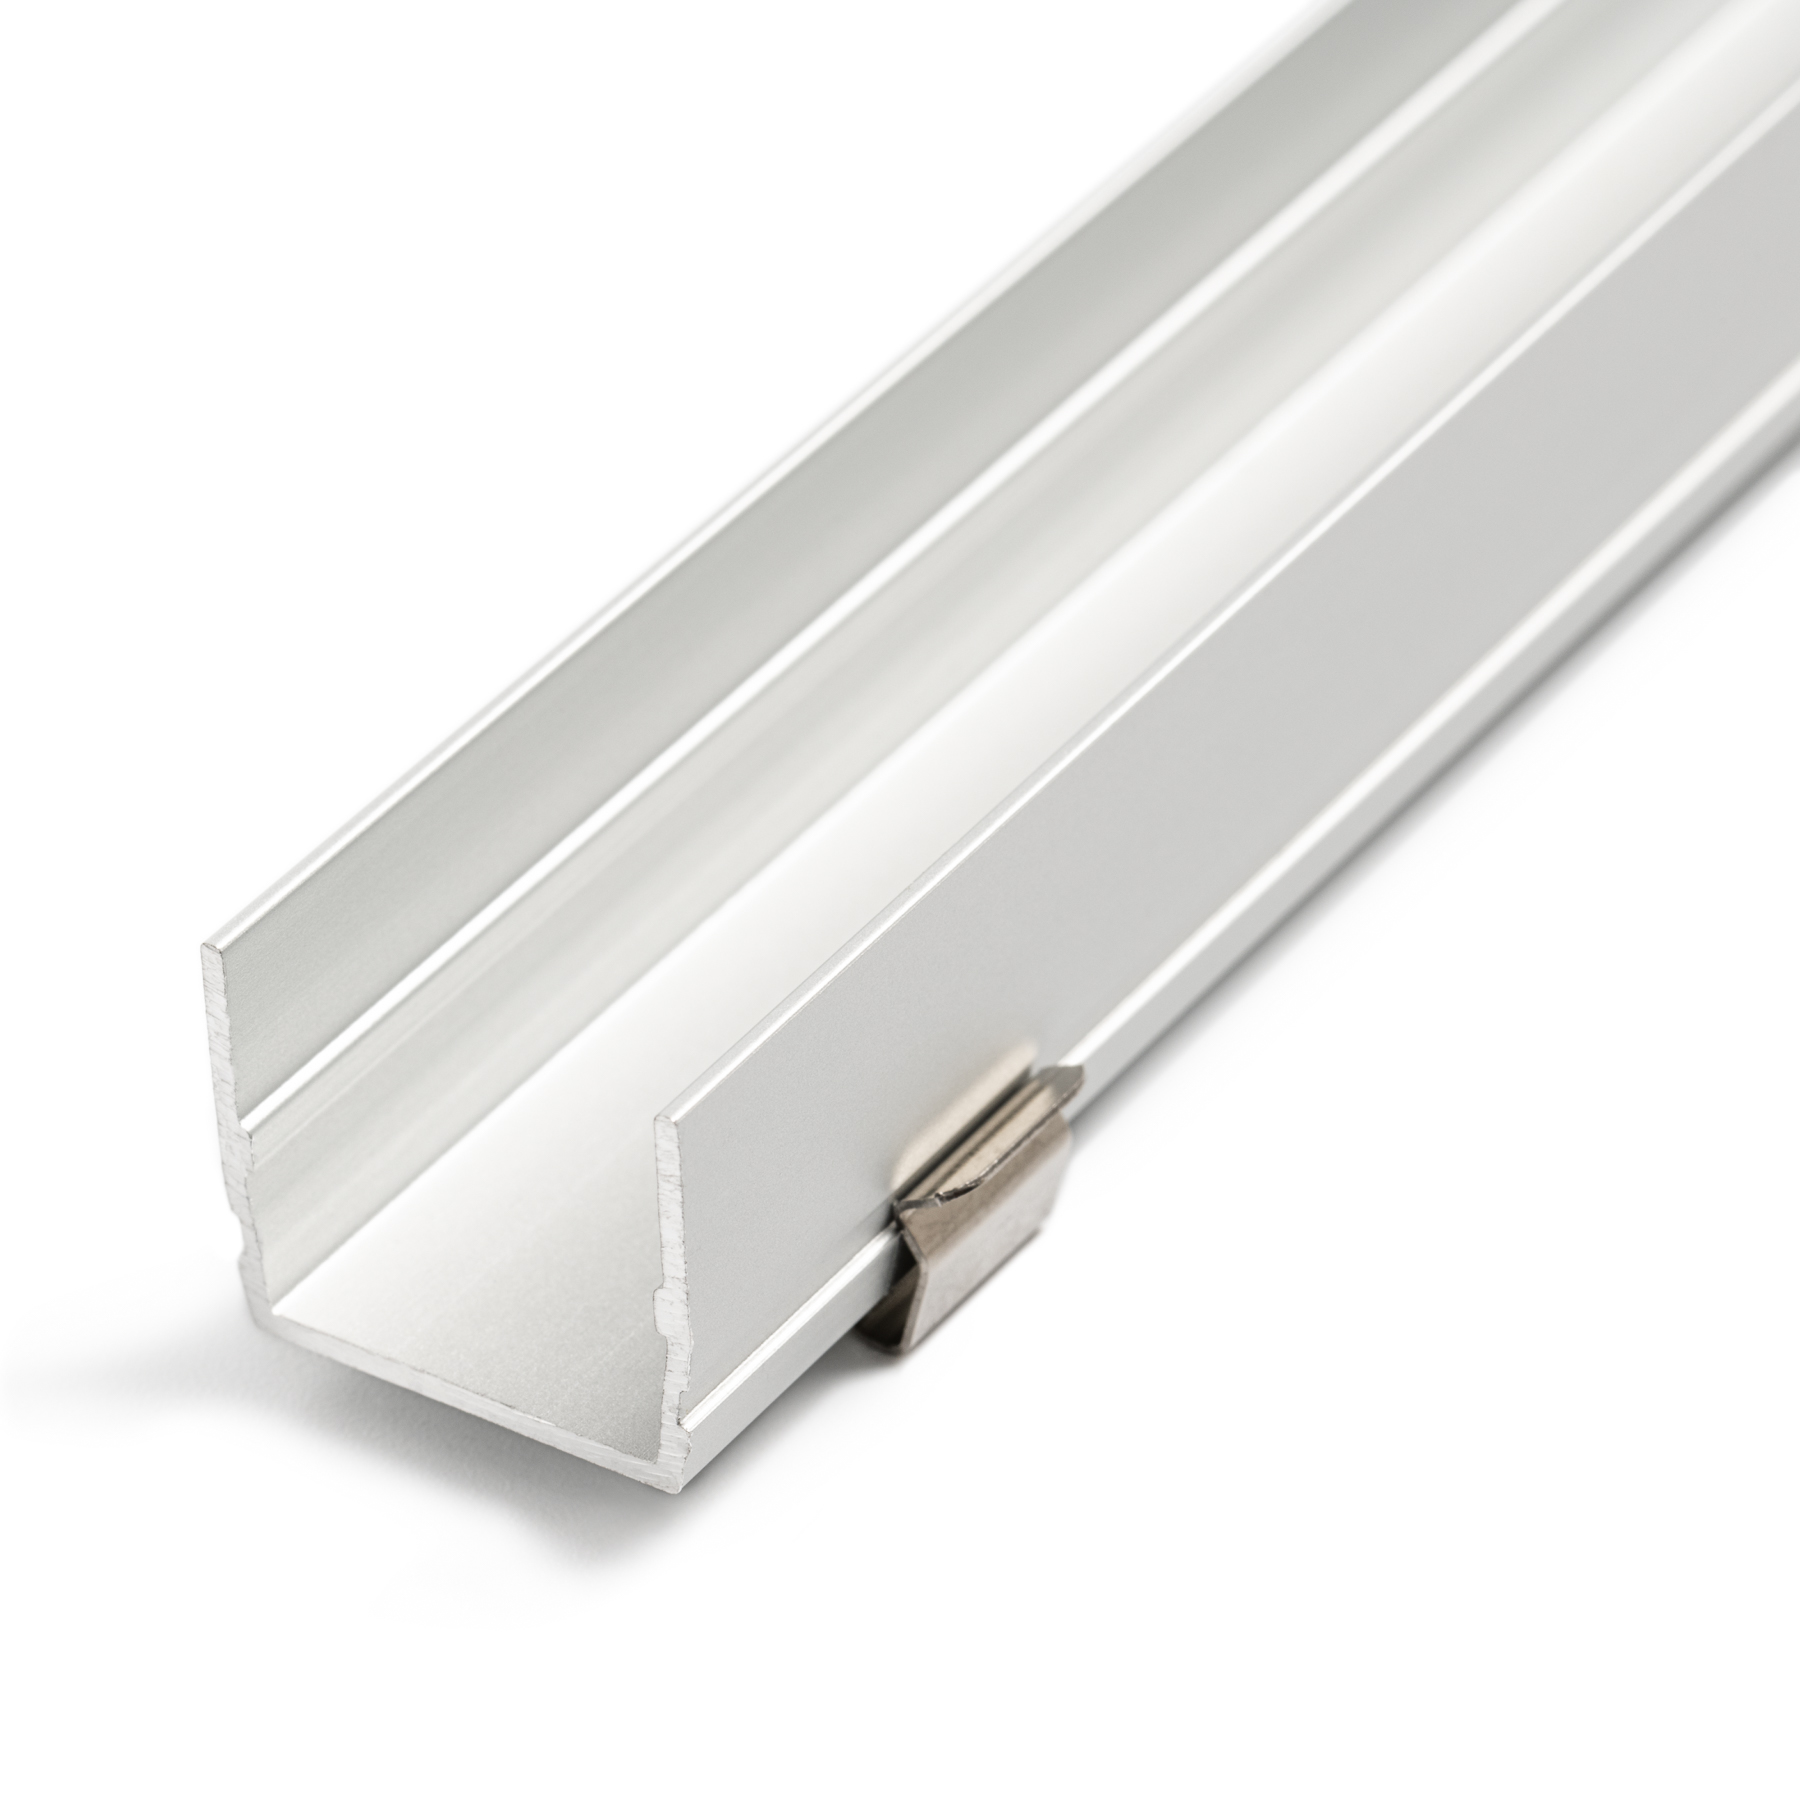 Großes Alu Einbau Profil R21 Leiste für LED Streifen bis 31mm inkl Endkappen 